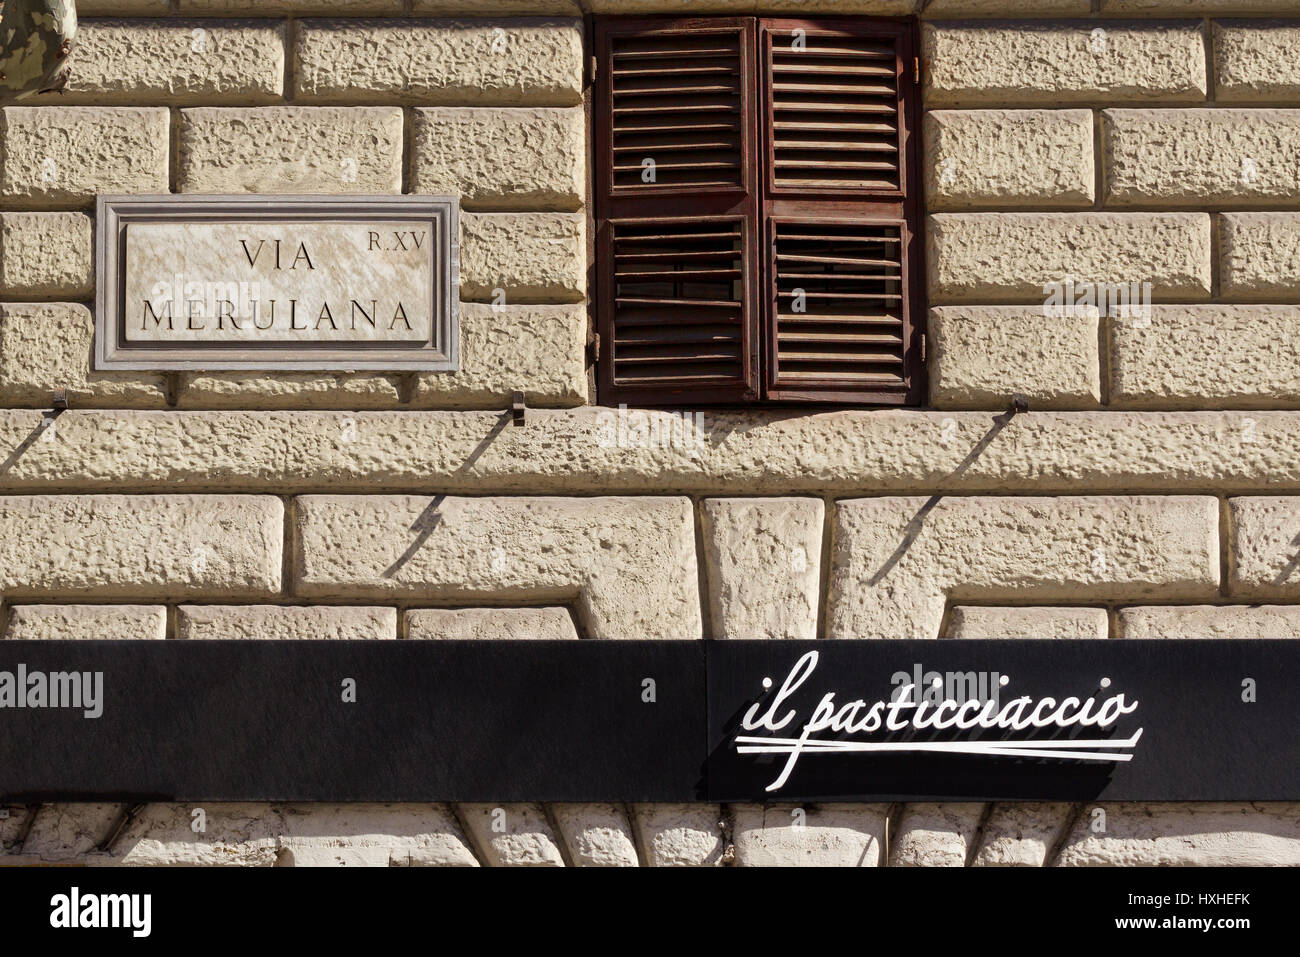 Quer Pasticciaccio Brutto de via Merulana - un classico della letteratura italiana di Carlo Emilio Ghedda ora ricordato da un bar, Roma, Italia Foto Stock